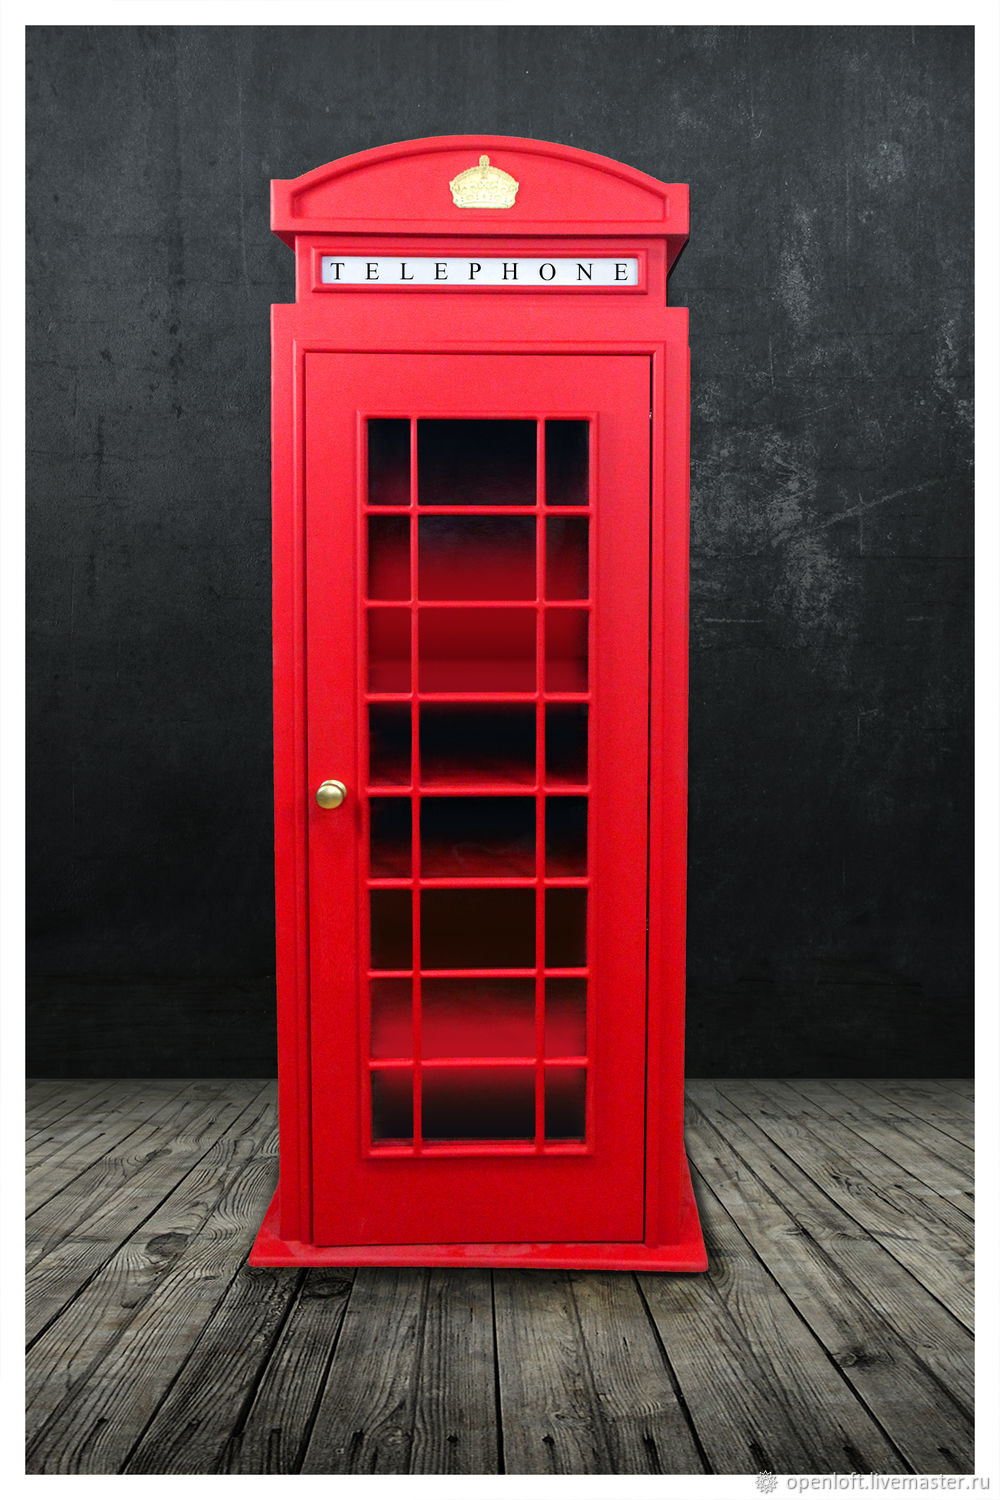 Задушевный разговор — знаменитая красная телефонная будка скопирована с надгробия